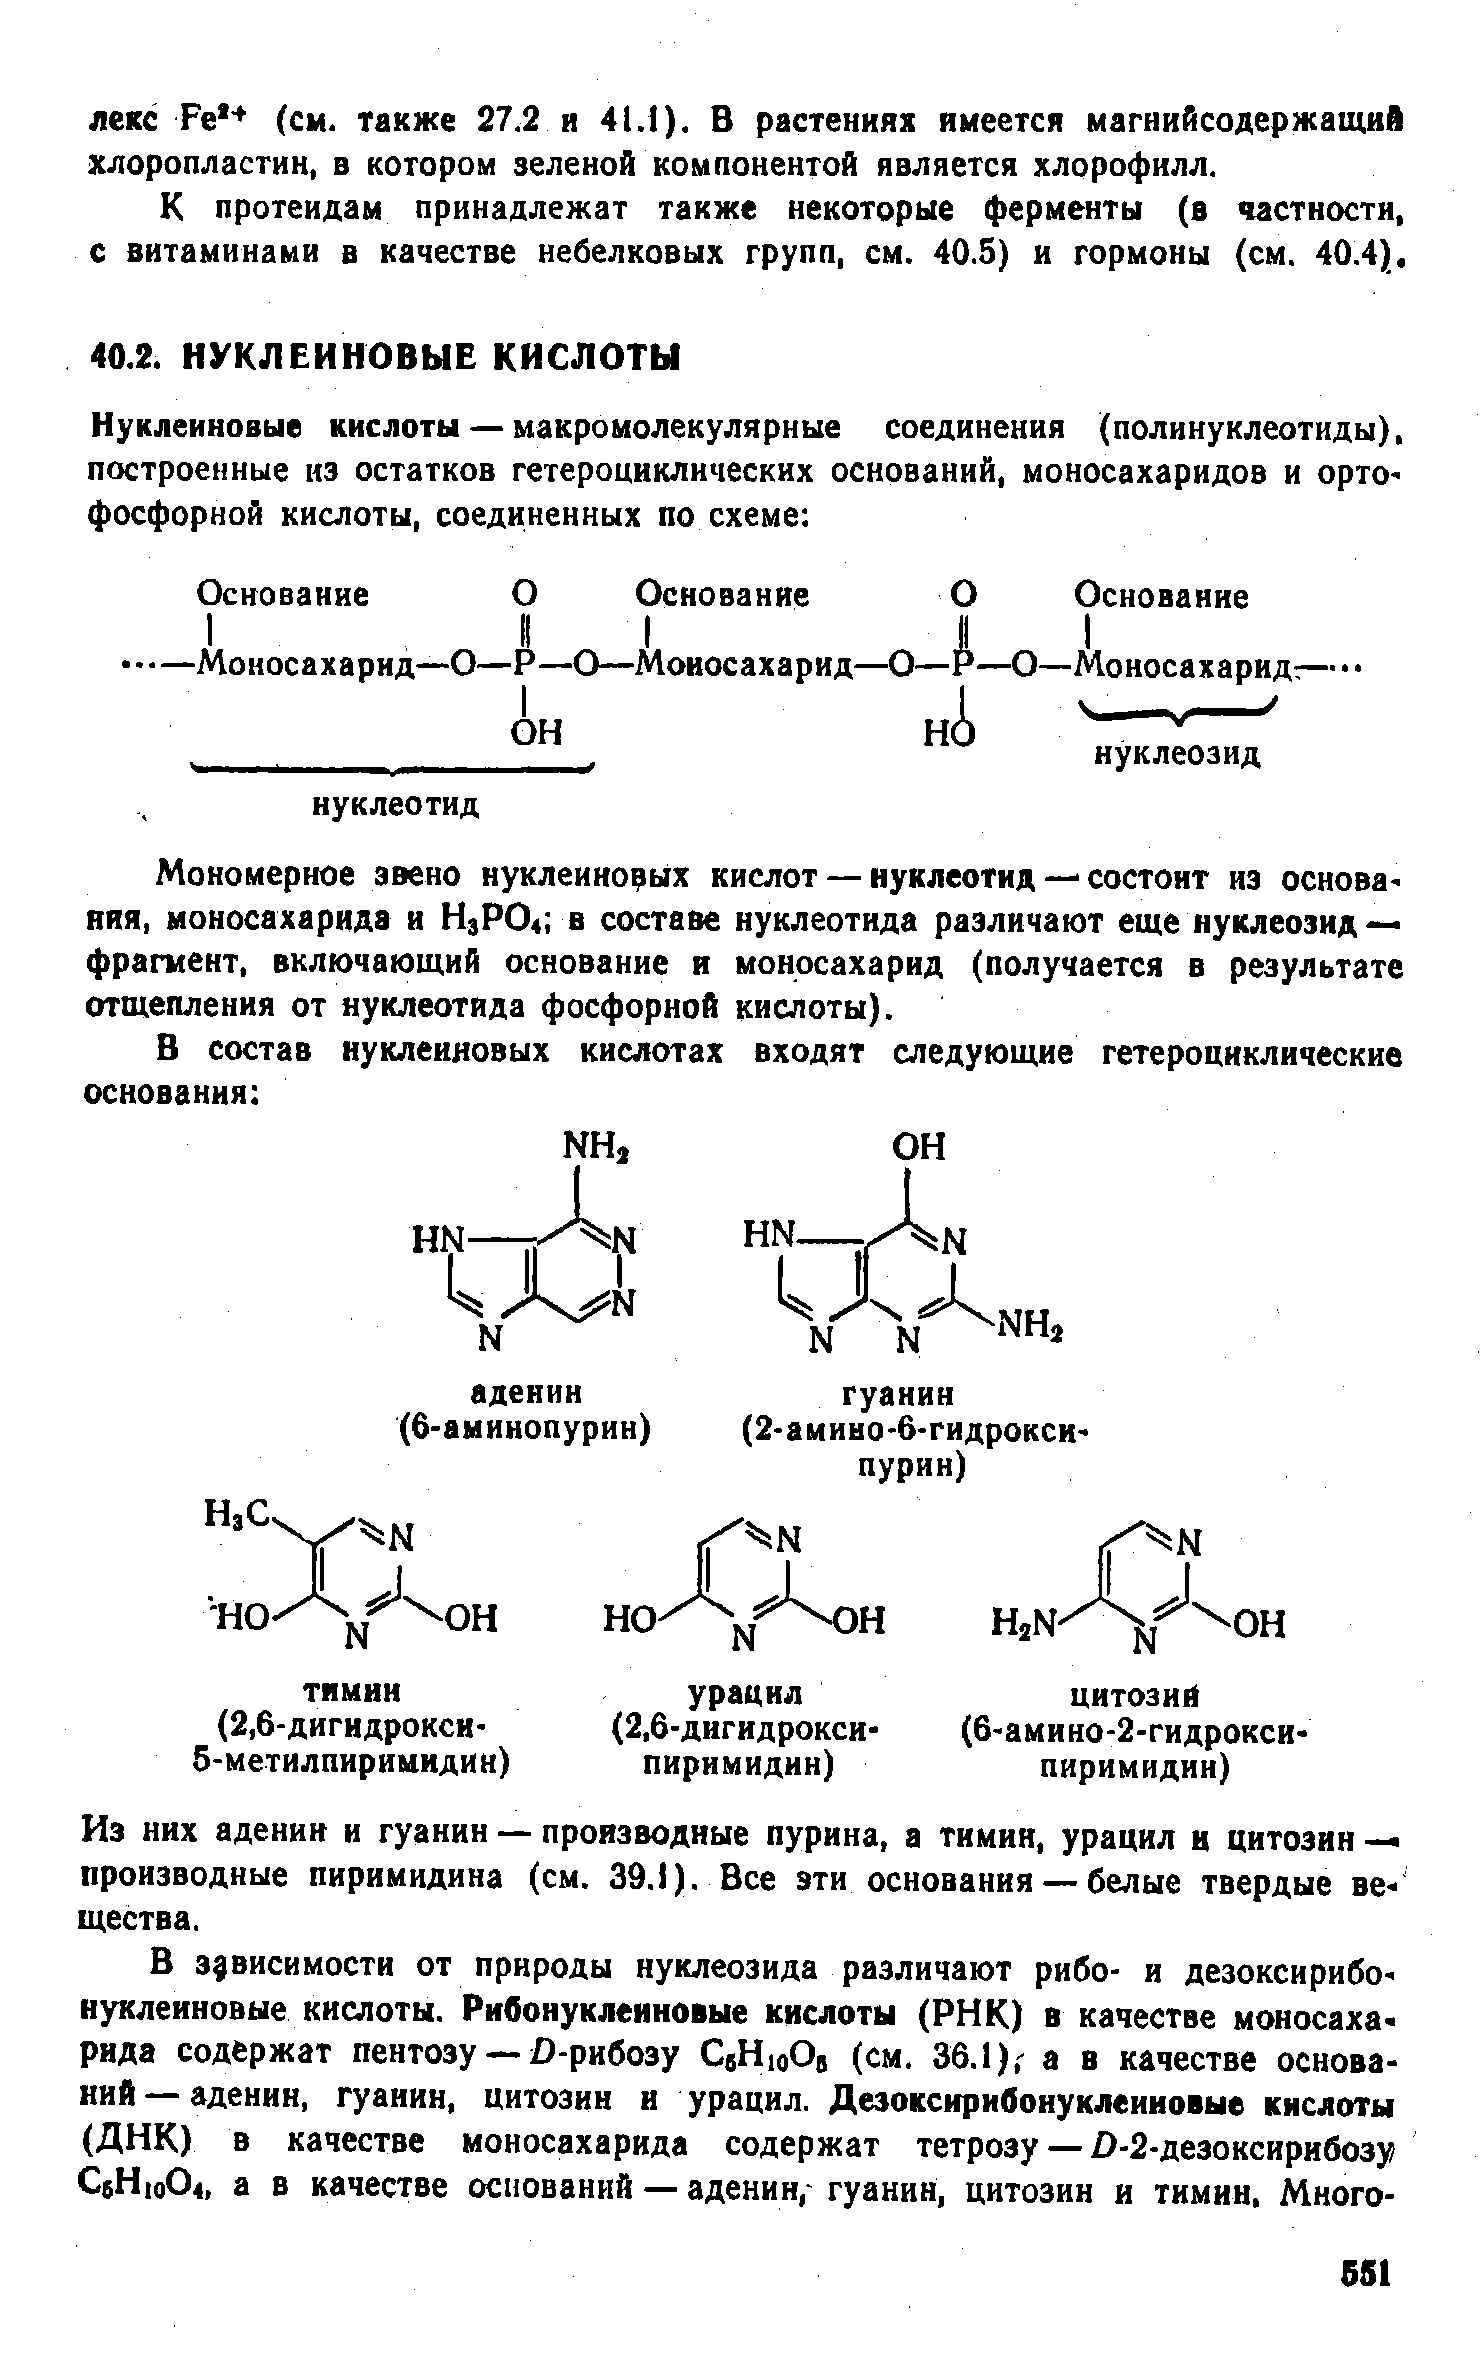 Мономерное звено нуклеиновых кислот — нуклеотид — состоит из основа яяя, моносахарида и Н3РО4 в составе нуклеотида различают еще нуклеозид — фрагмент, включающий основание и моносахарид (получается в результате отщепления от нуклеотида фосфорной кислоты).